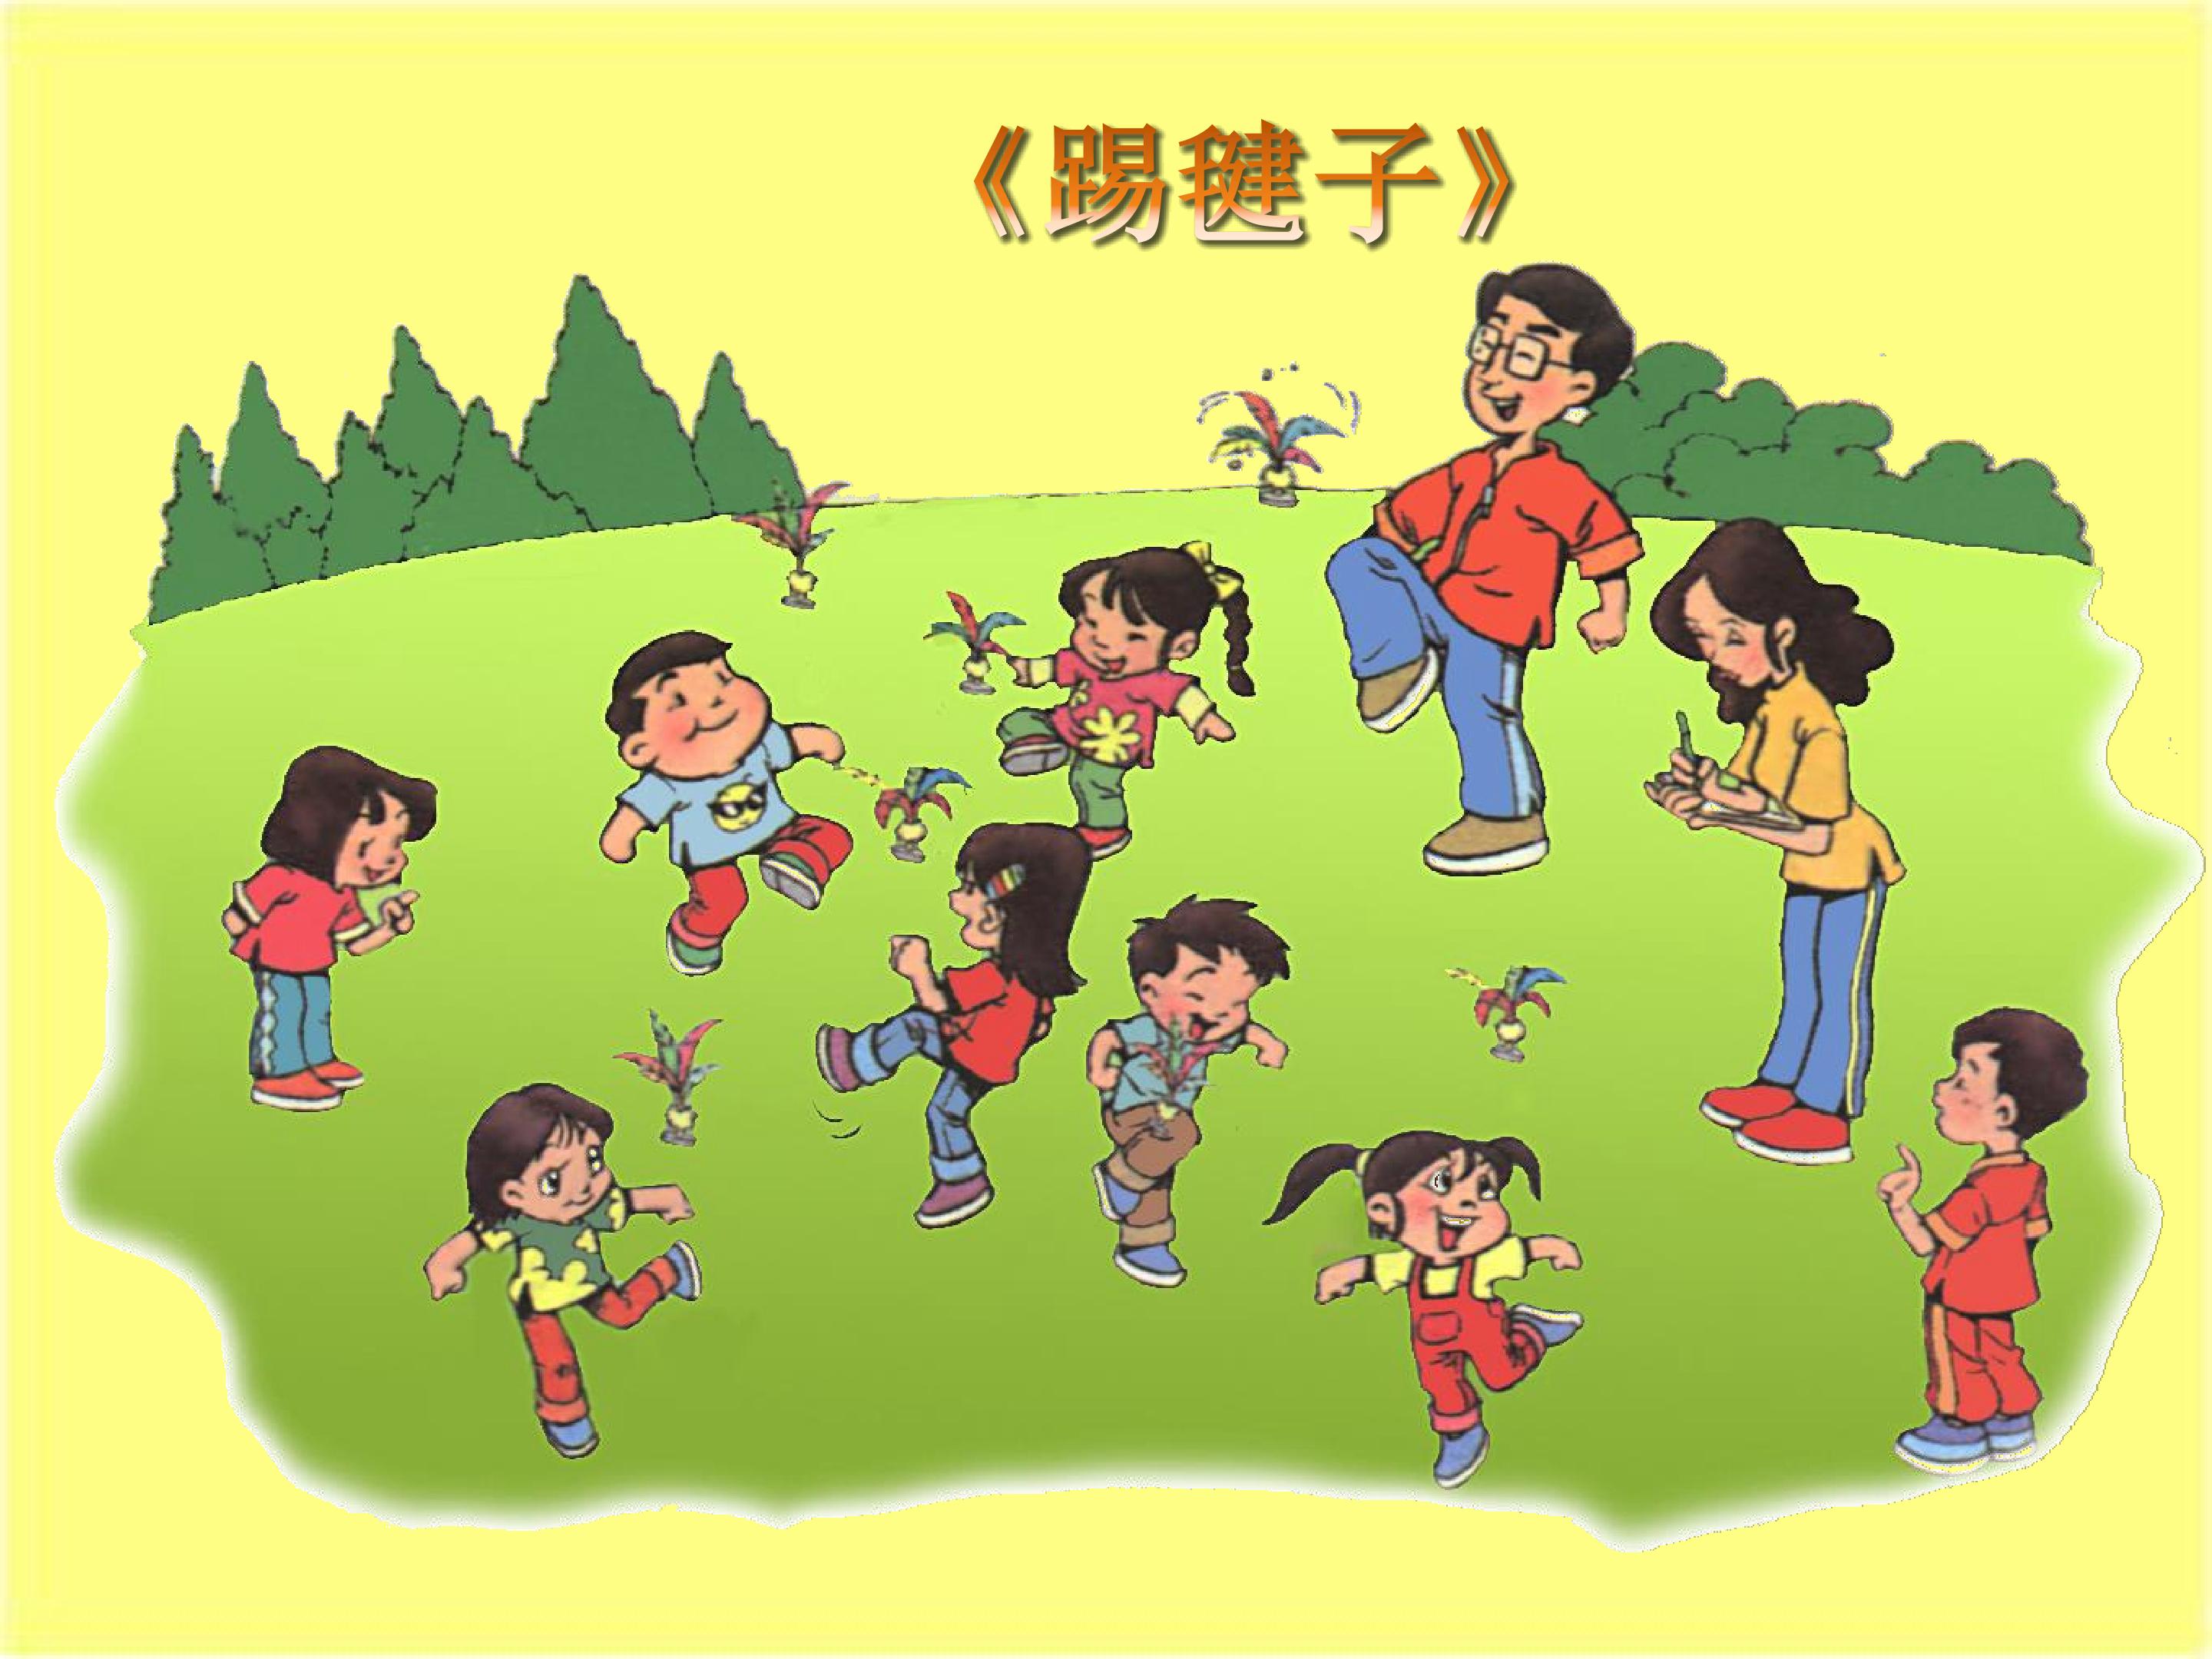 姐弟俩在院子里踢毽子-蓝牛仔影像-中国原创广告影像素材